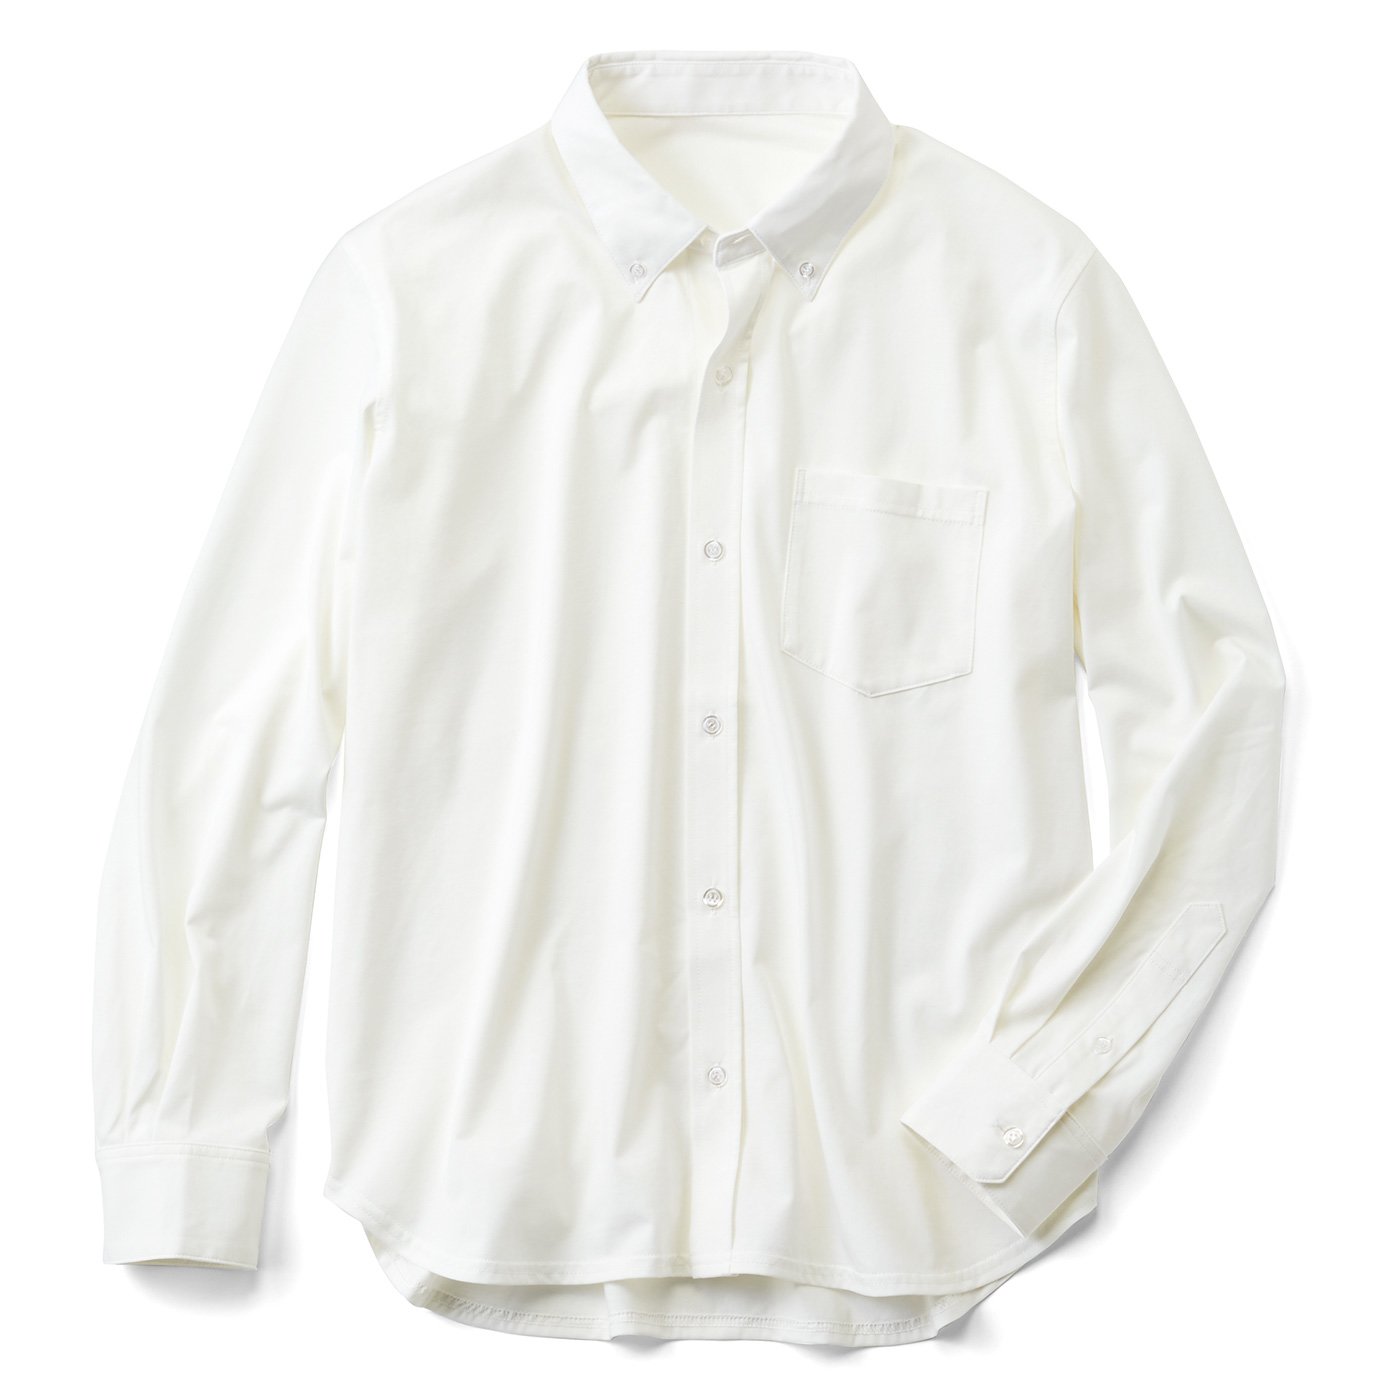 IEDIT[イディット]　セルフビズシーンのジャケットインに最適なつややかカットソー素材のメンズ美ノビシャツ〈オフホワイト〉